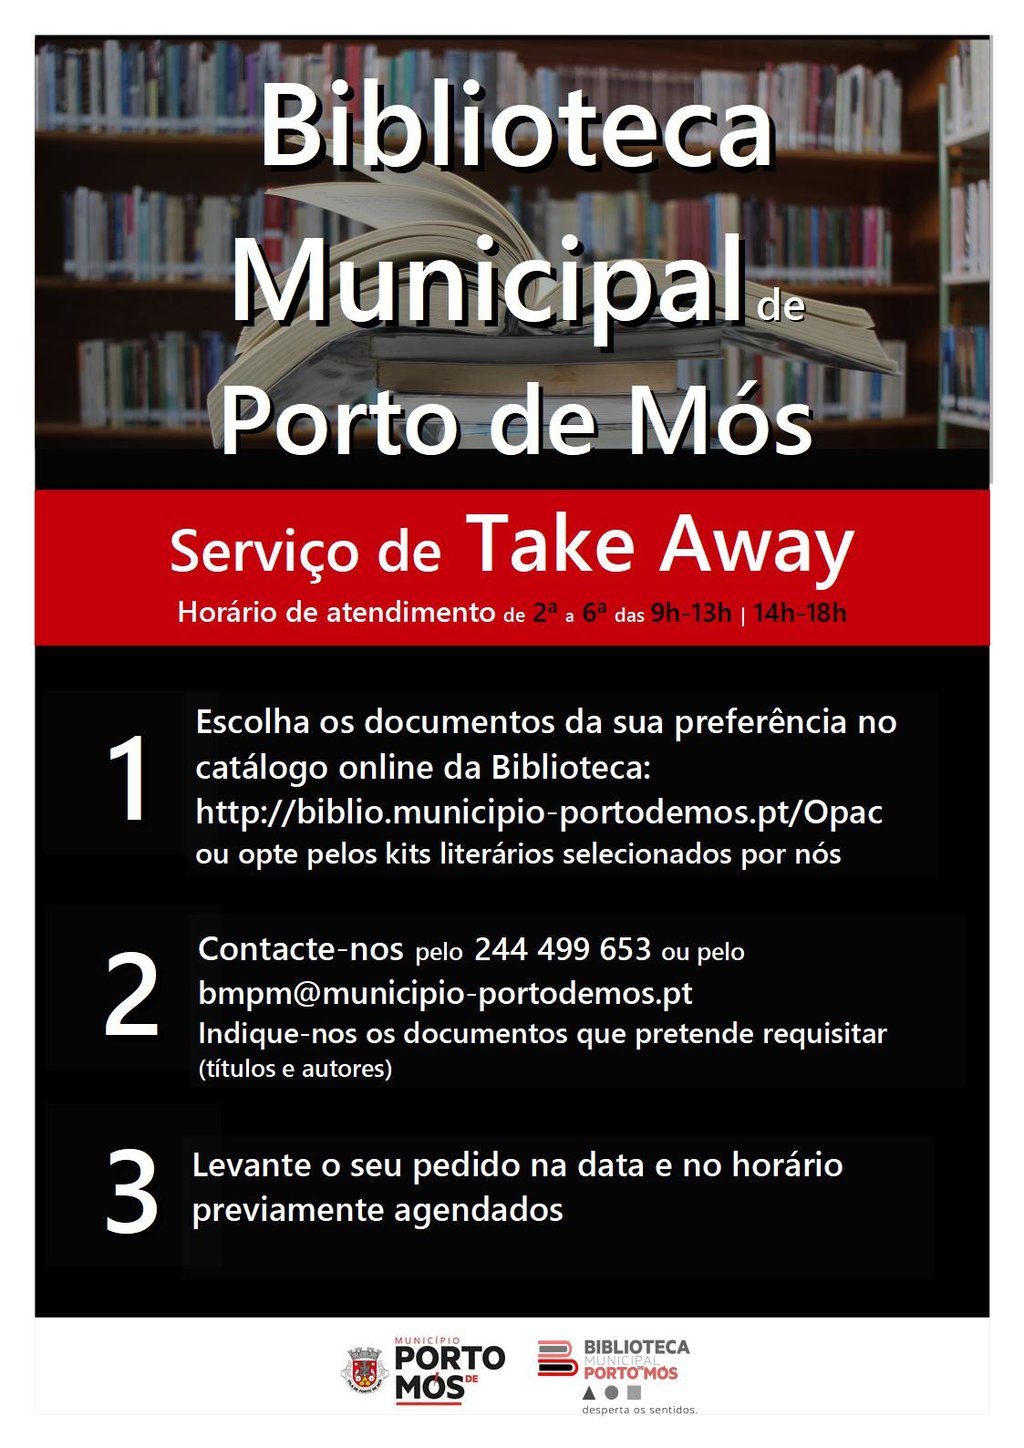 Horário e Funcionamento da Biblioteca Municipal de Porto de Mós